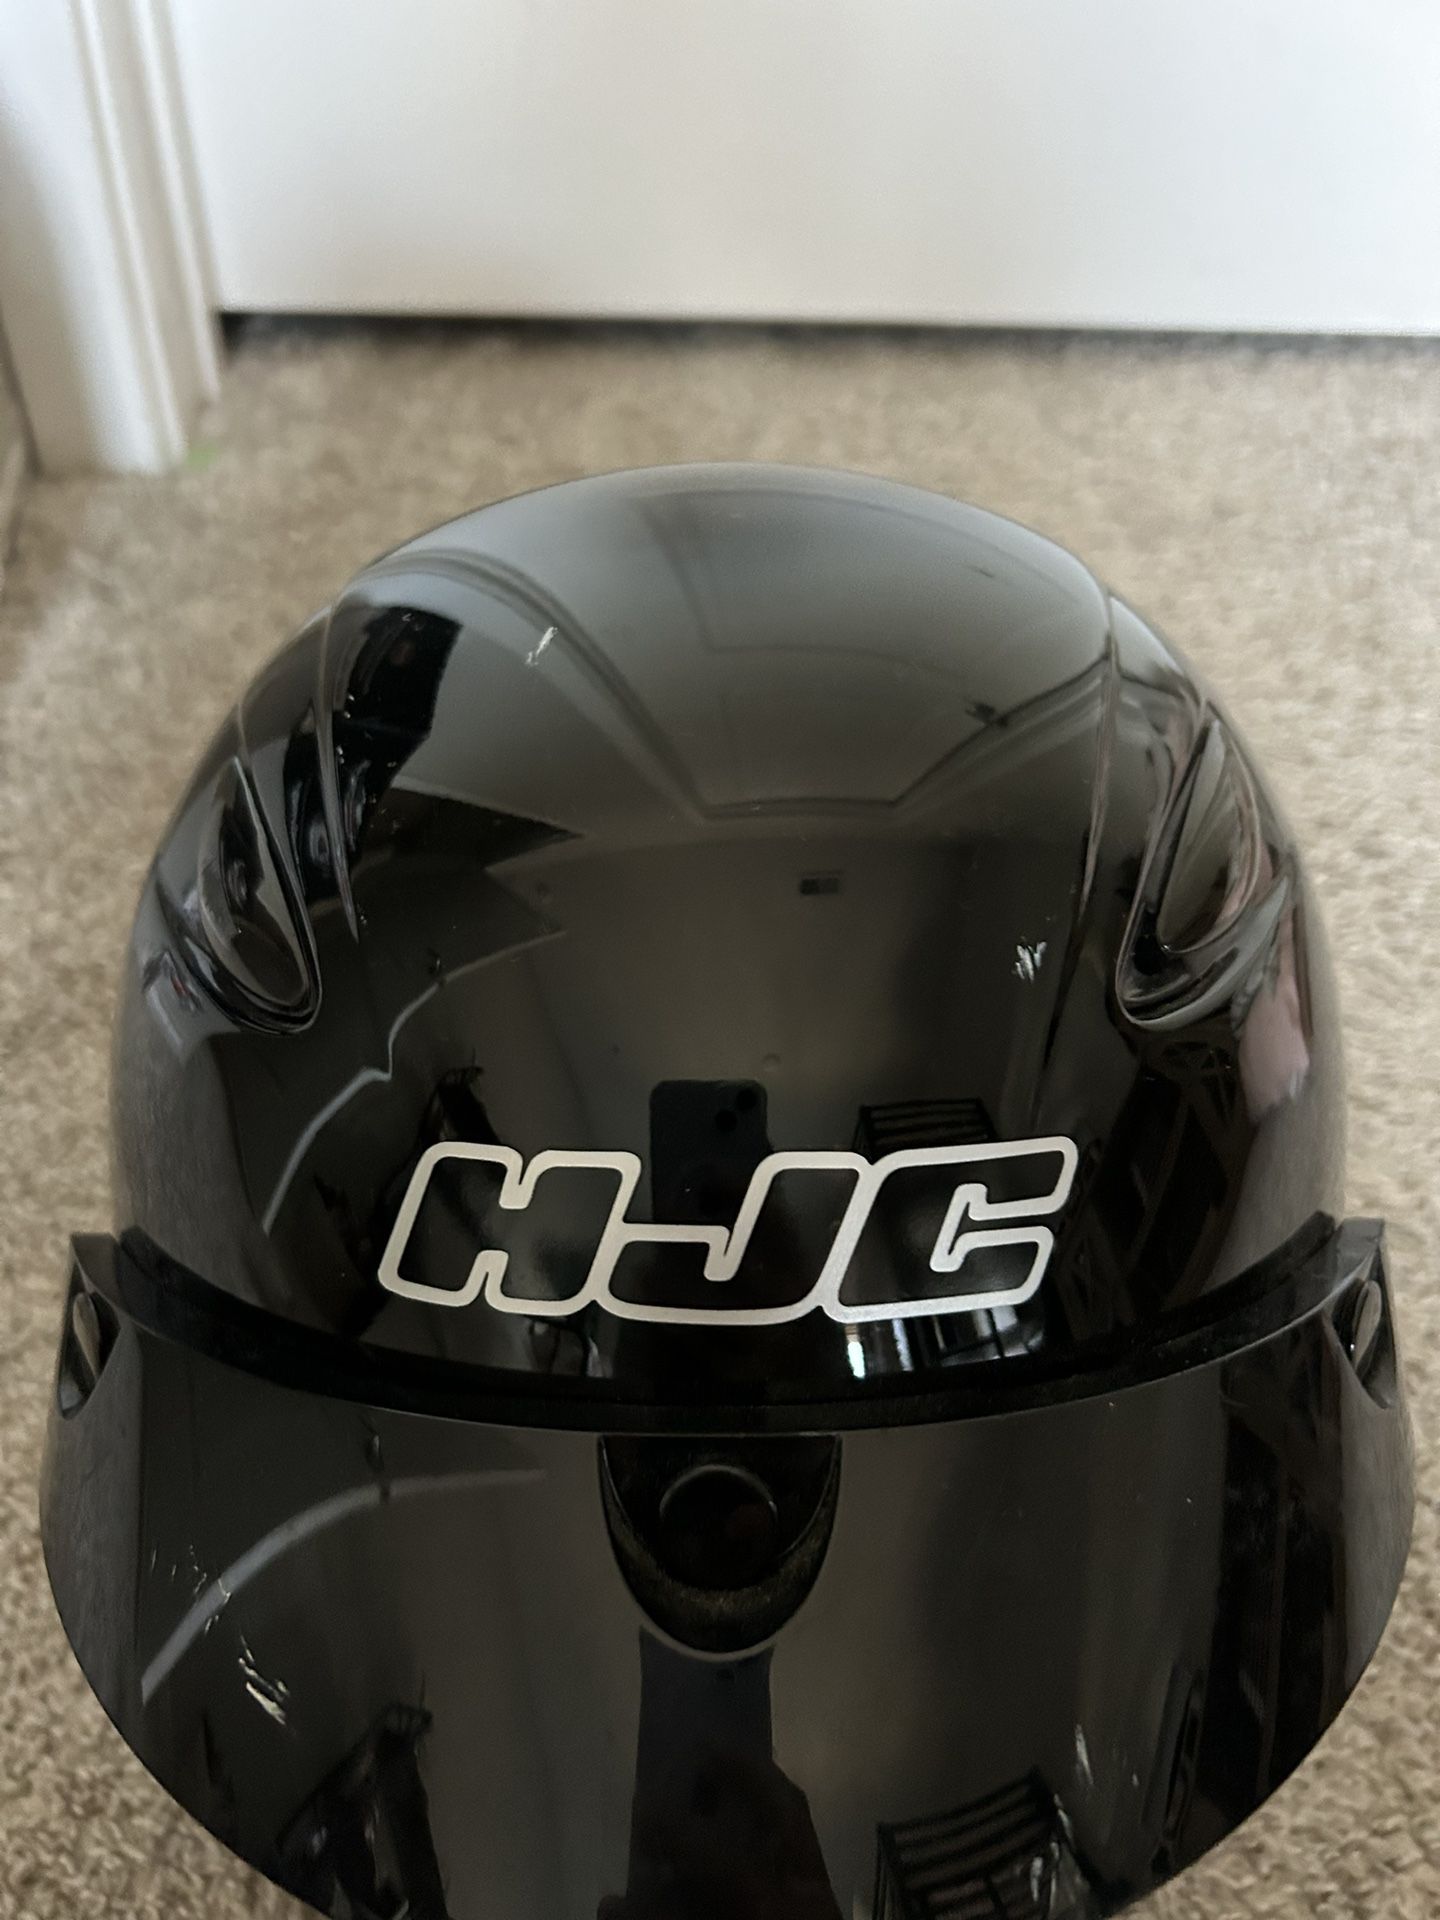 HJC Motor Cycle Helmet